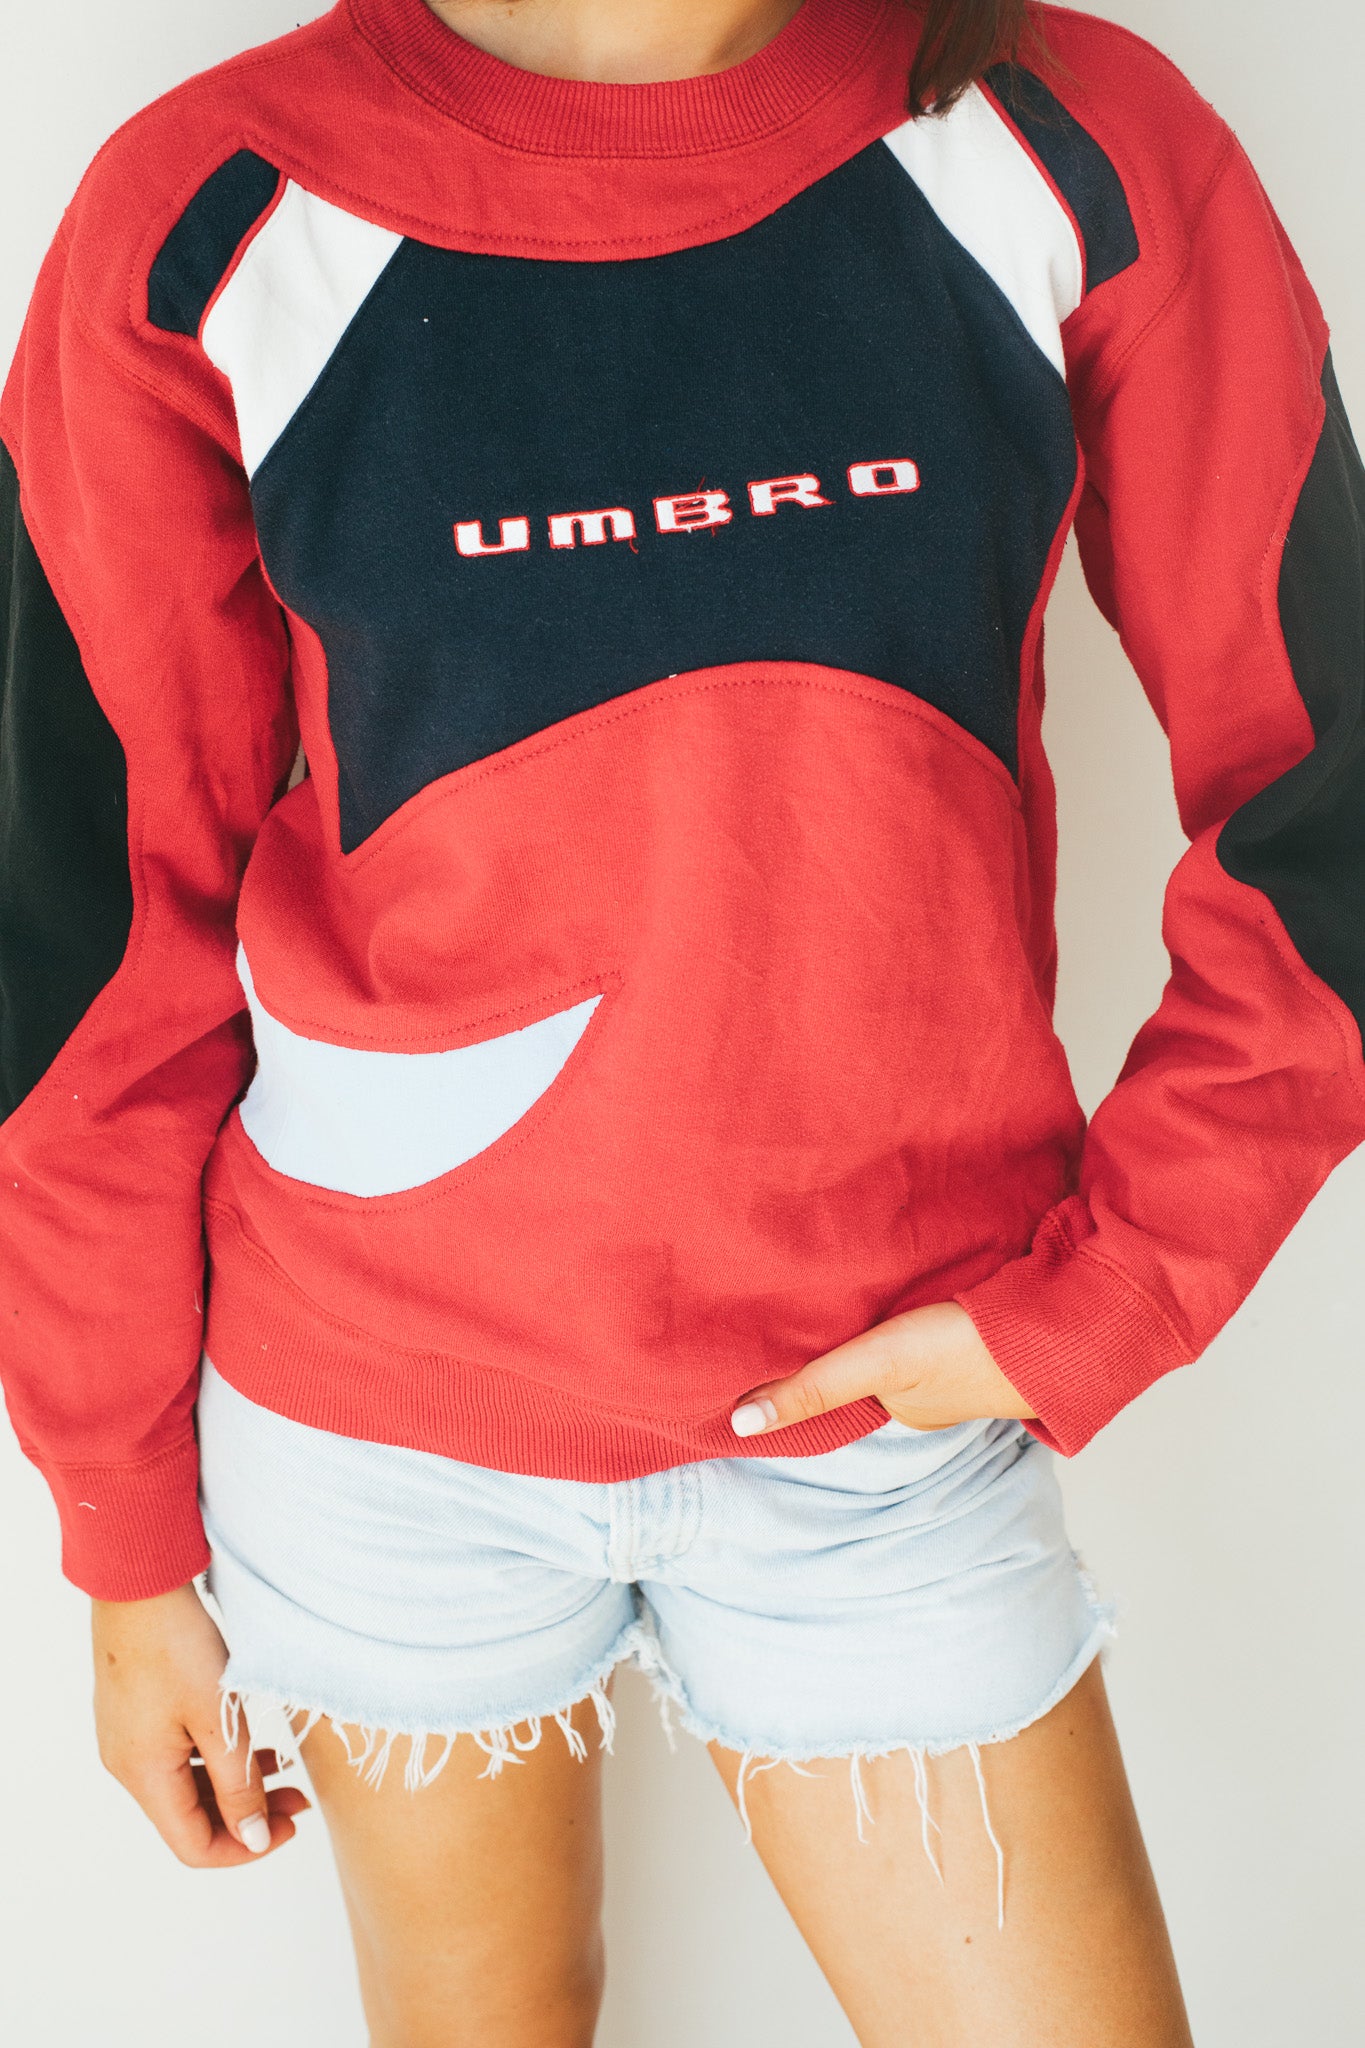 Umbro - Sweatshirt